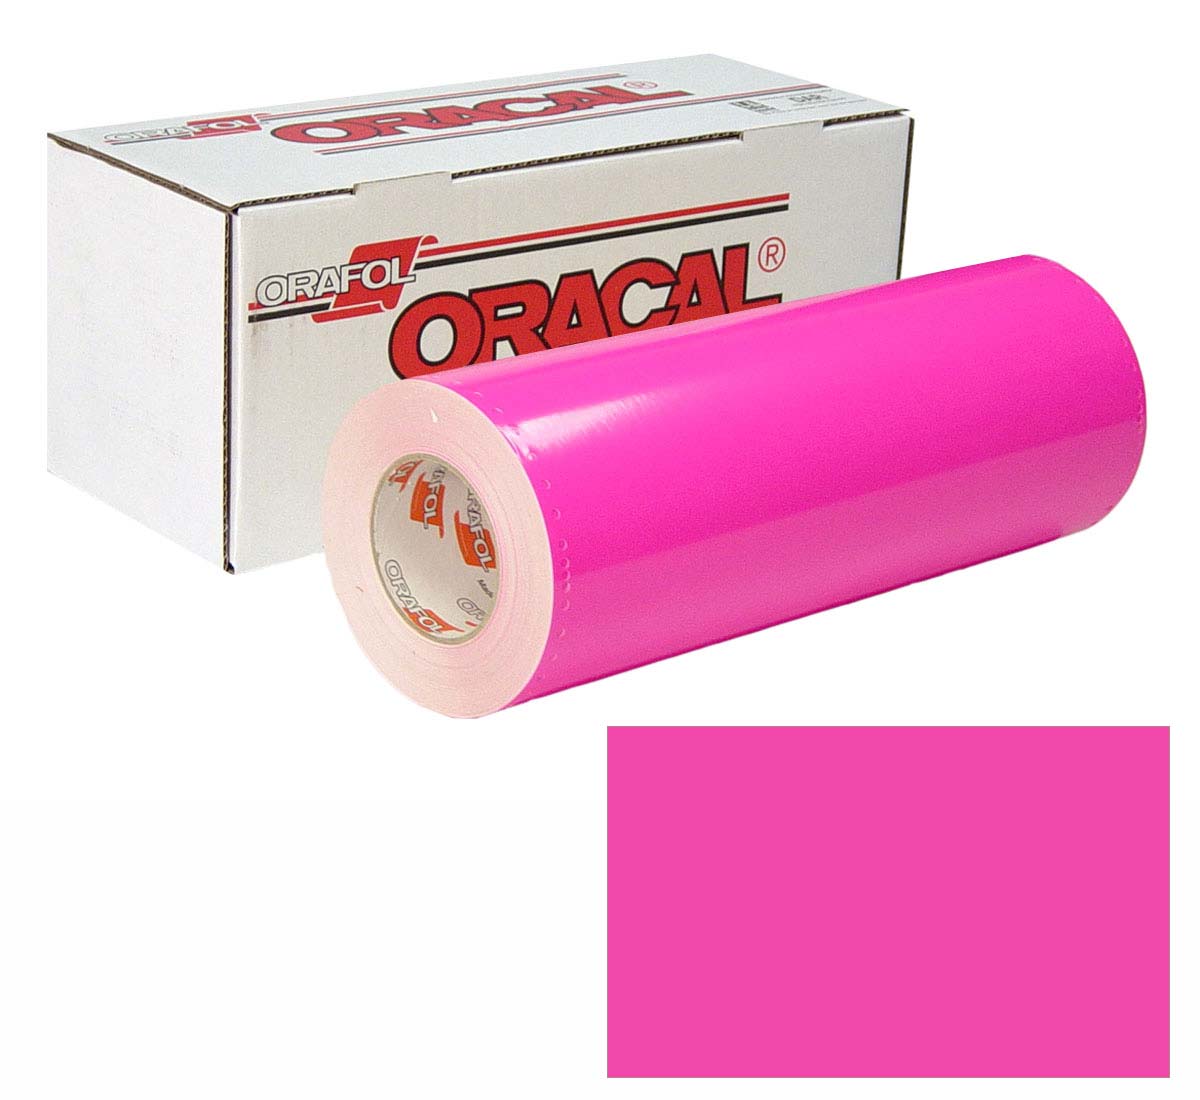 ORACAL 7510 Fluor Unp 48in X 10yd 046 Pink